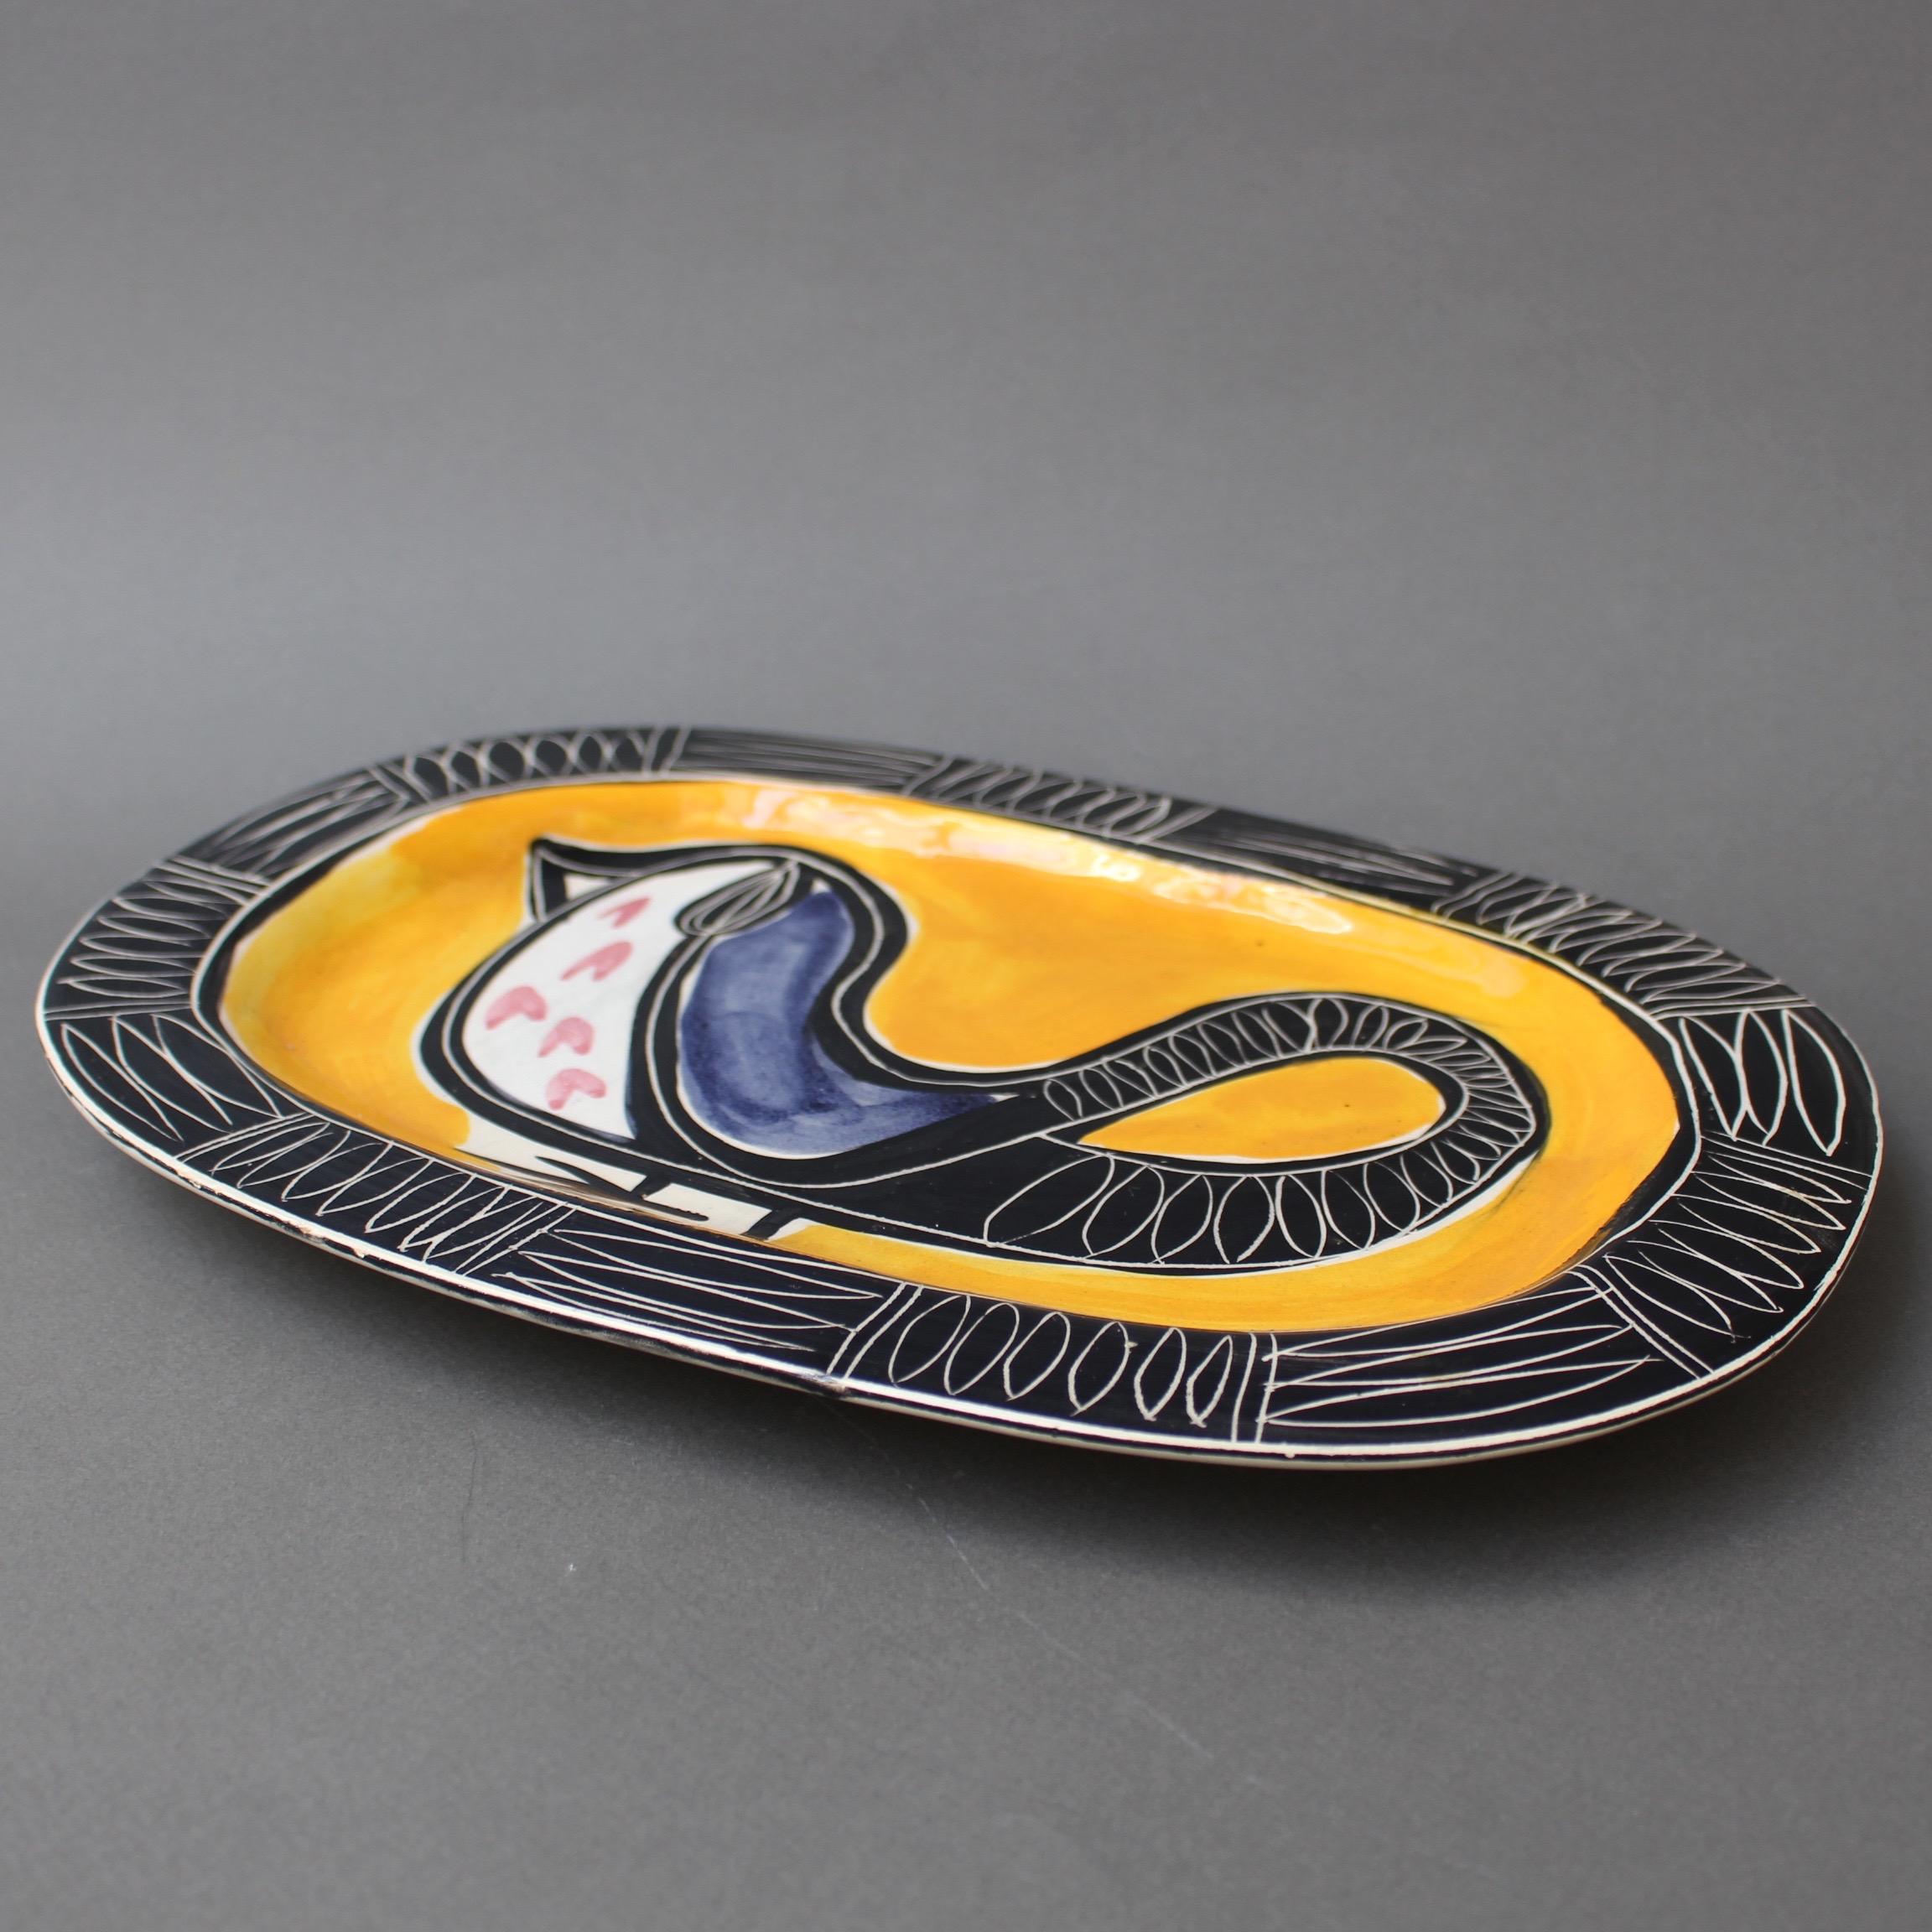 Ceramic Decorative Platter with Bird Motif by Jacques Pouchain - Poët-Laval 1